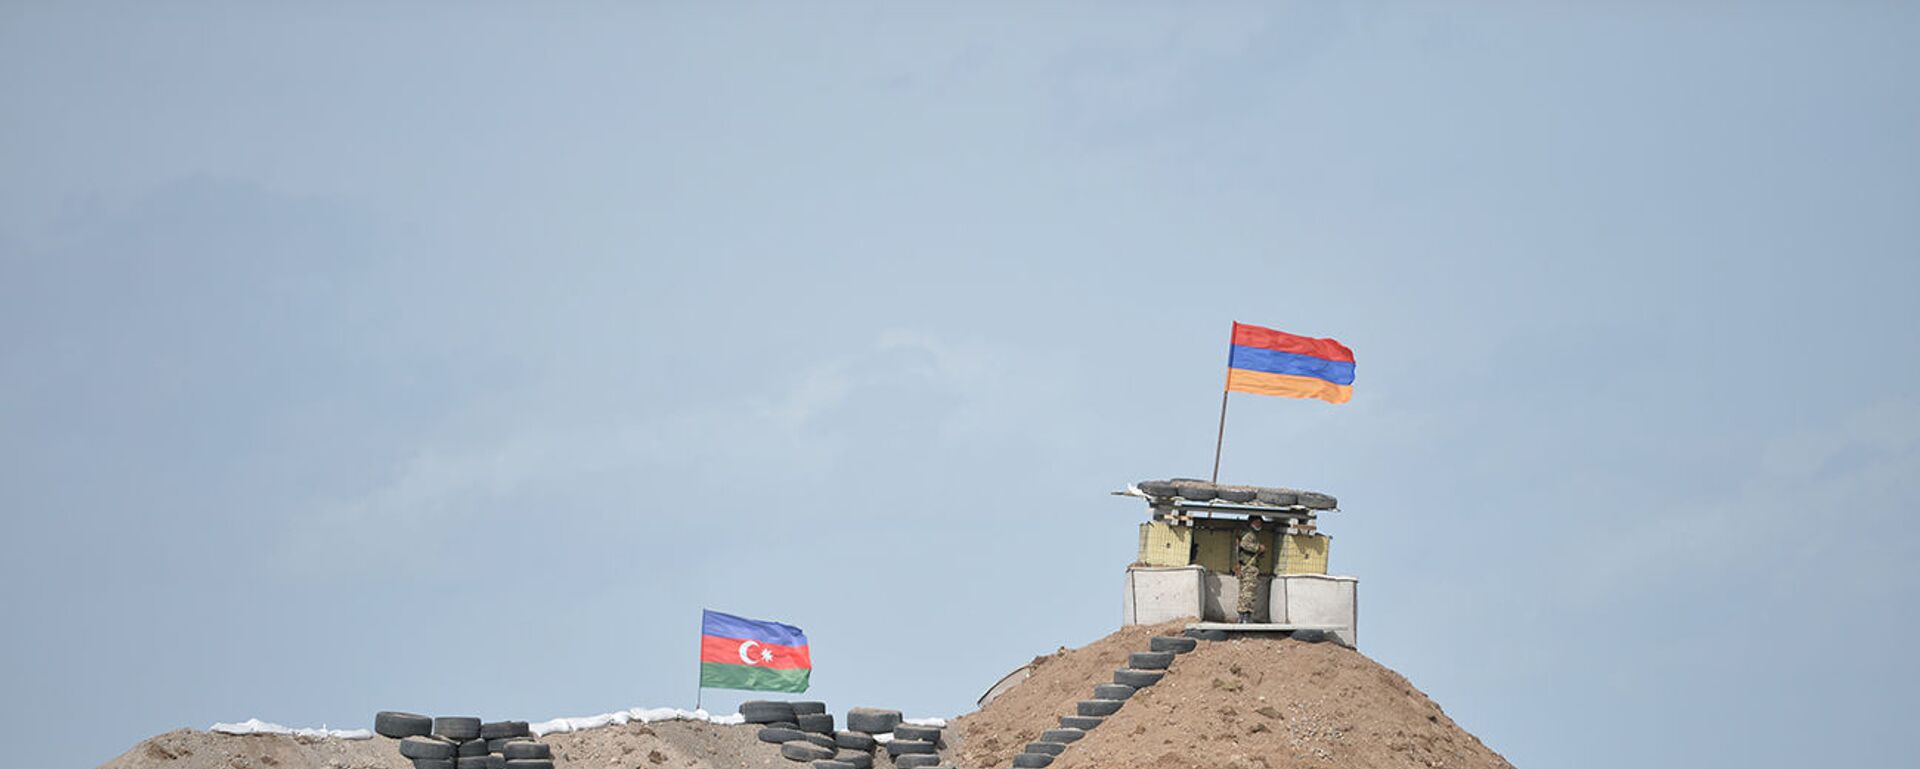 Военные посты на армянсо-азербайджанской границе - Sputnik Армения, 1920, 21.07.2021